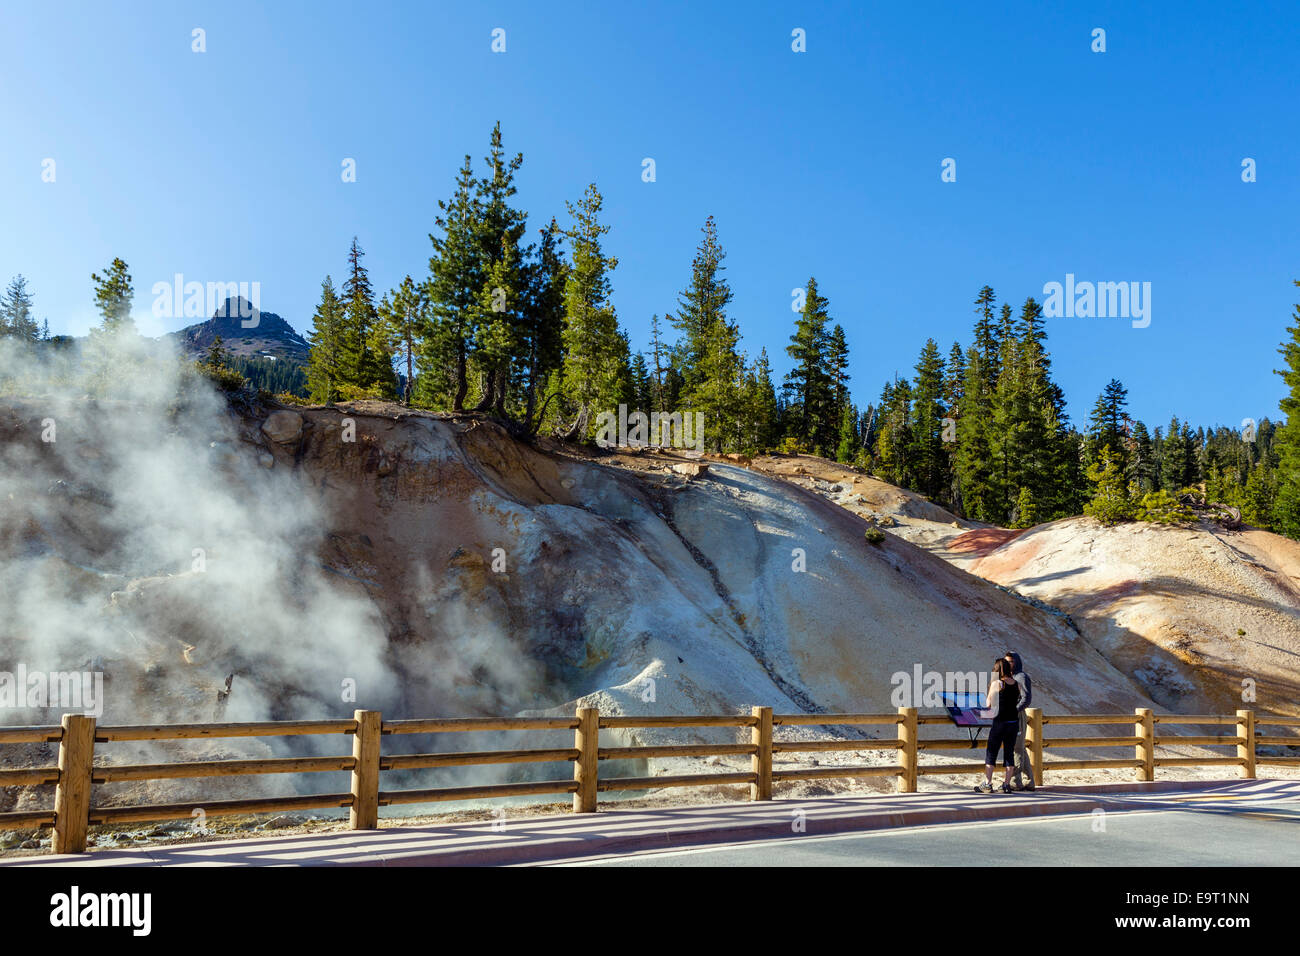 Heiße Quellen und Fumarolen im Schwefel funktioniert Geothermie Bereich, Lassen Volcanic National Park, Kalifornien, USA Stockfoto